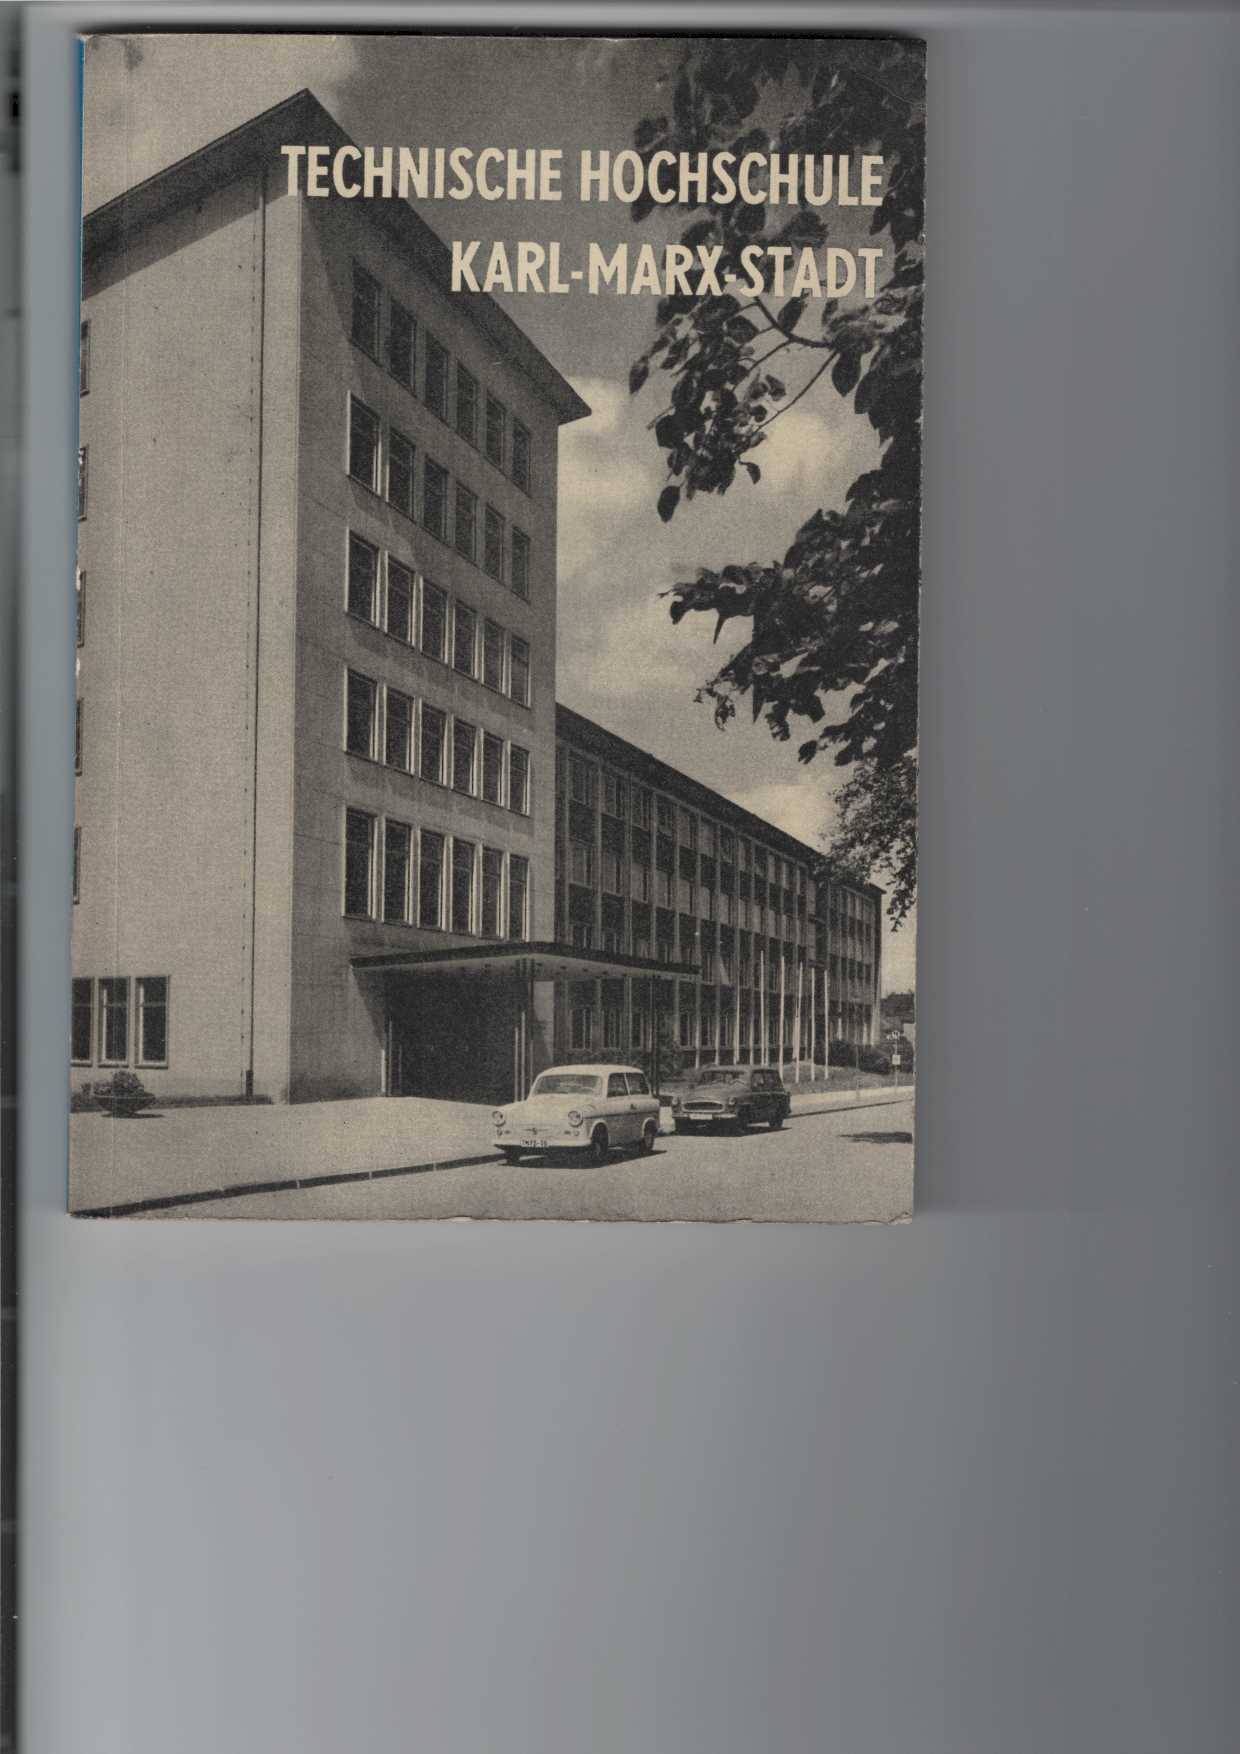   ber das Studium an der Technischen Hochschule Karl-Marx-Stadt 1965. 